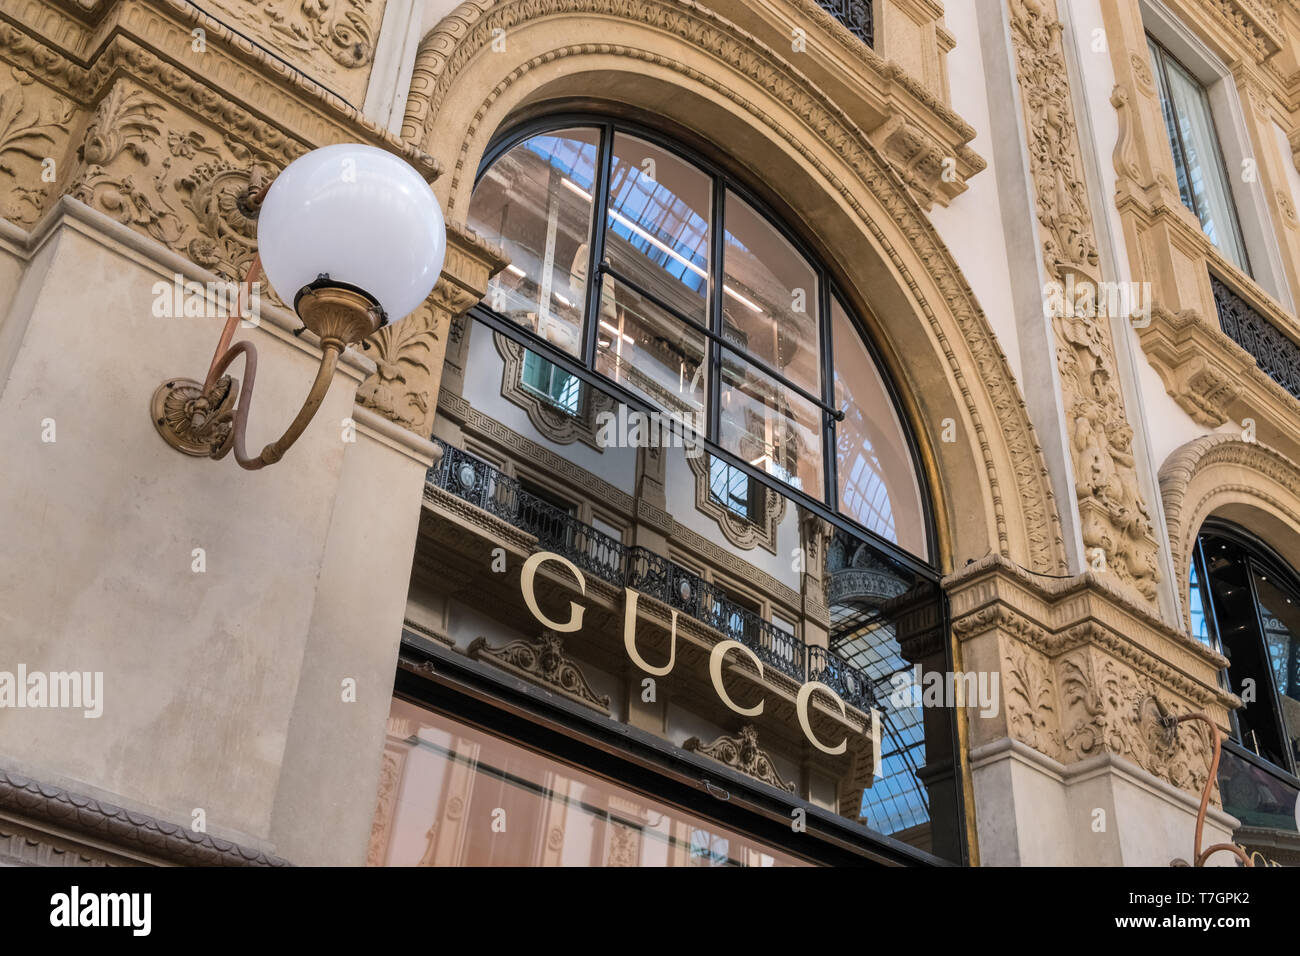 Gucci Store, die Galleria Vittorio Emanuele II Einkaufspassage Innenraum, Mailand, Italien Stockfoto